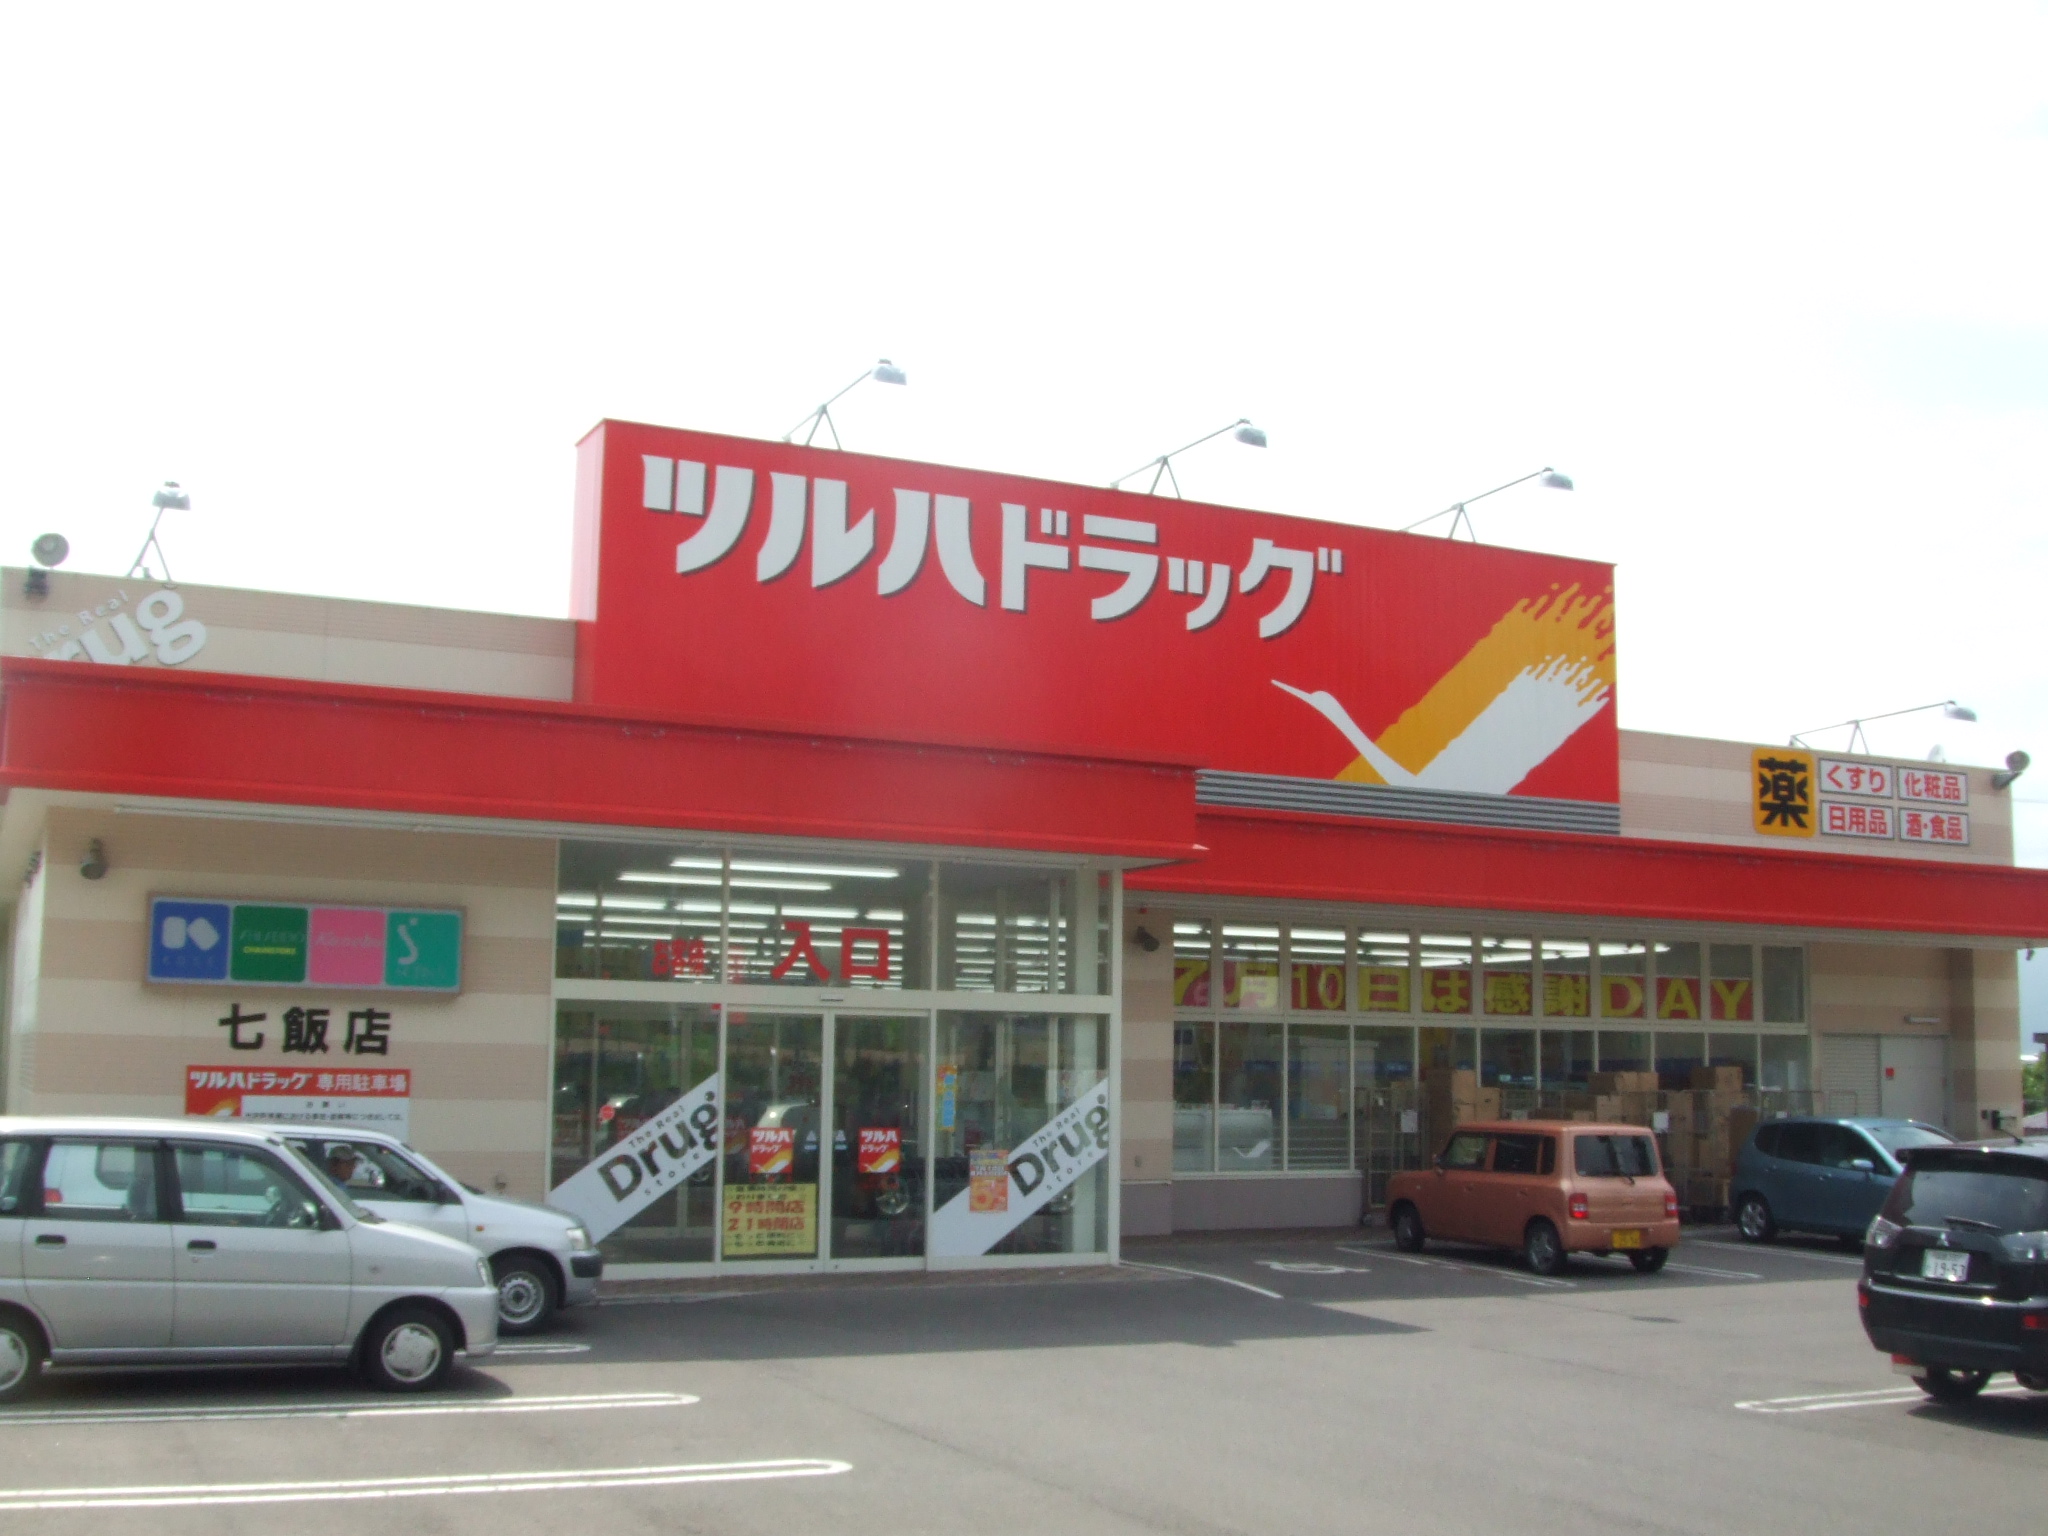 Dorakkusutoa. Tsuruha drag Nanae shop 793m until (drugstore)